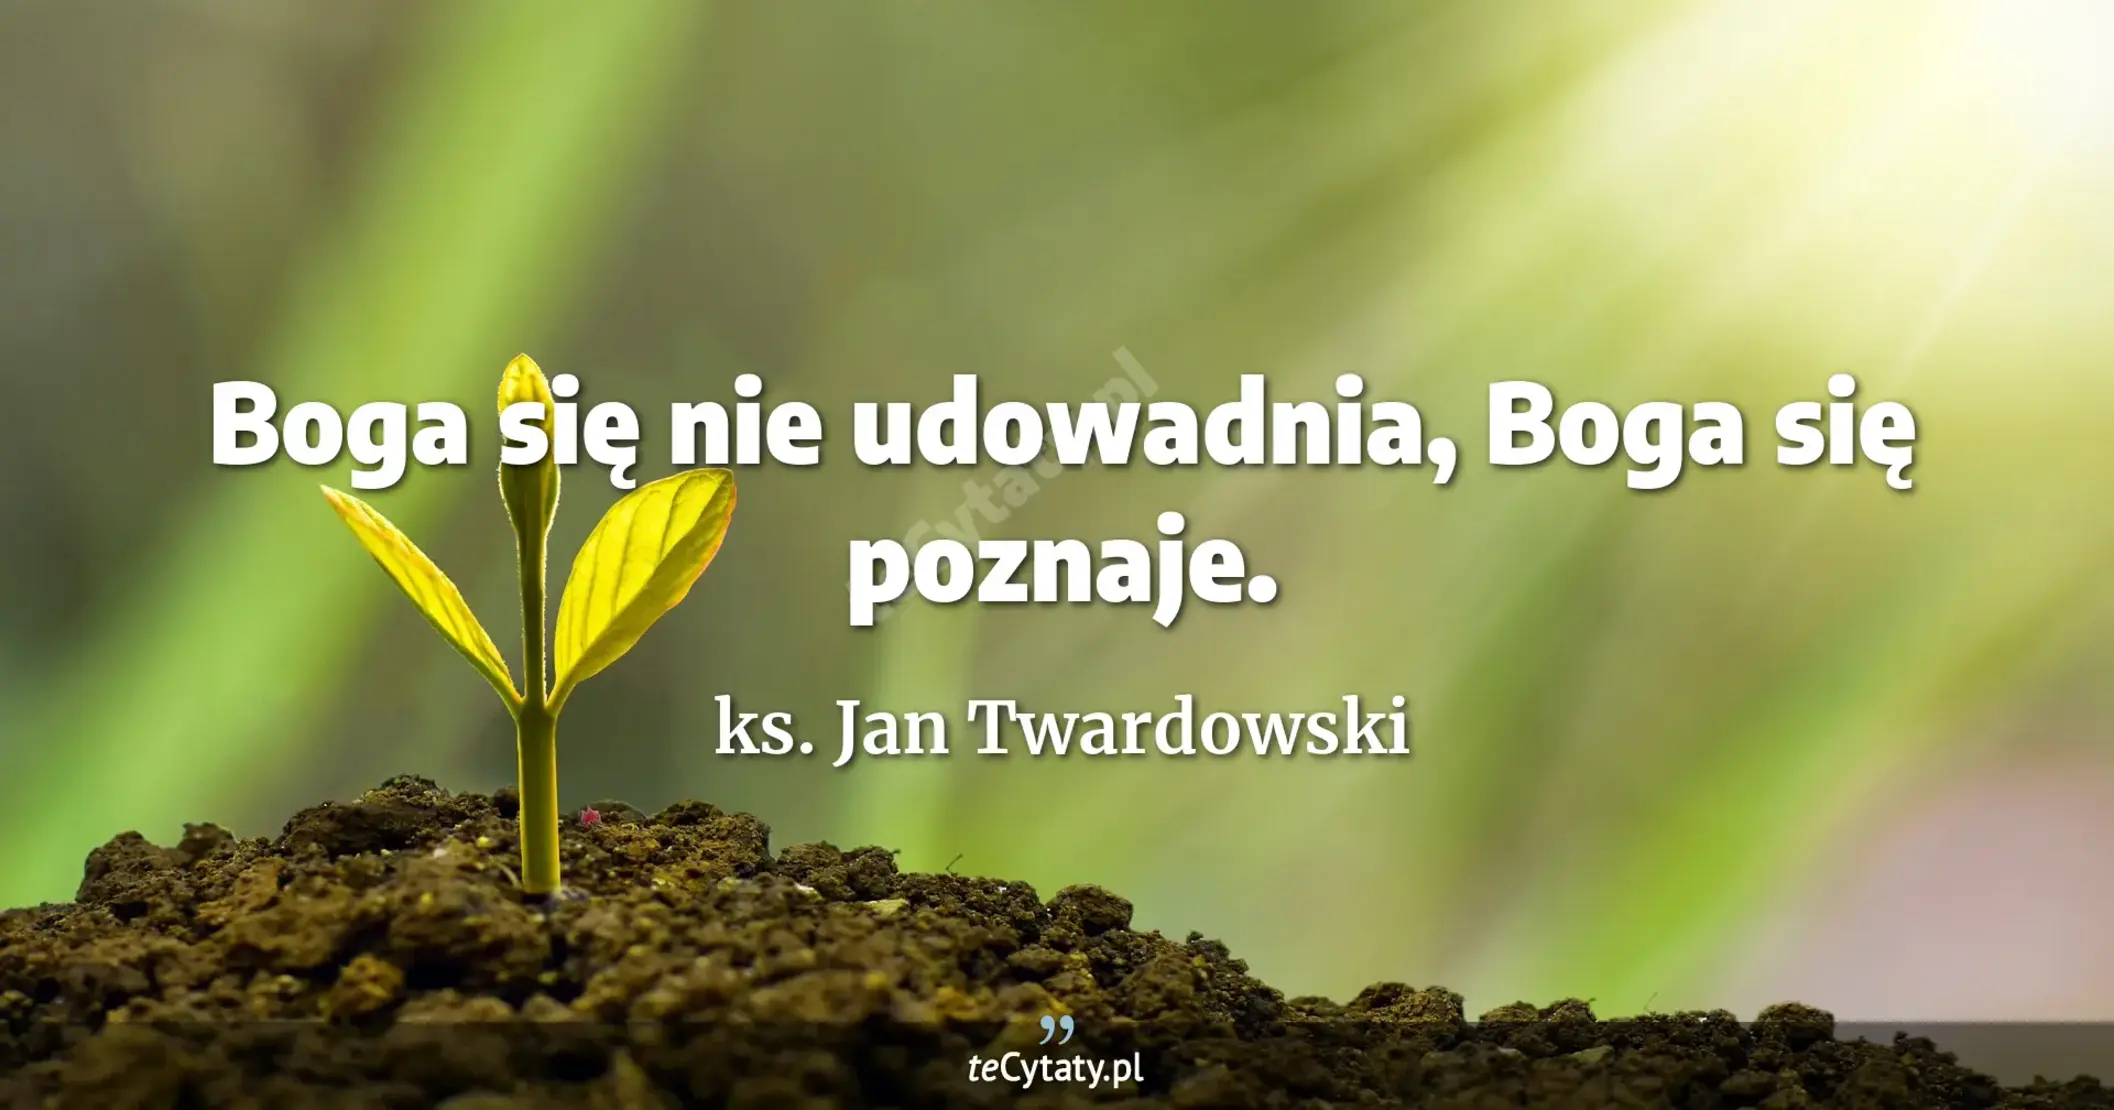 Boga się nie udowadnia, Boga się poznaje. - ks. Jan Twardowski